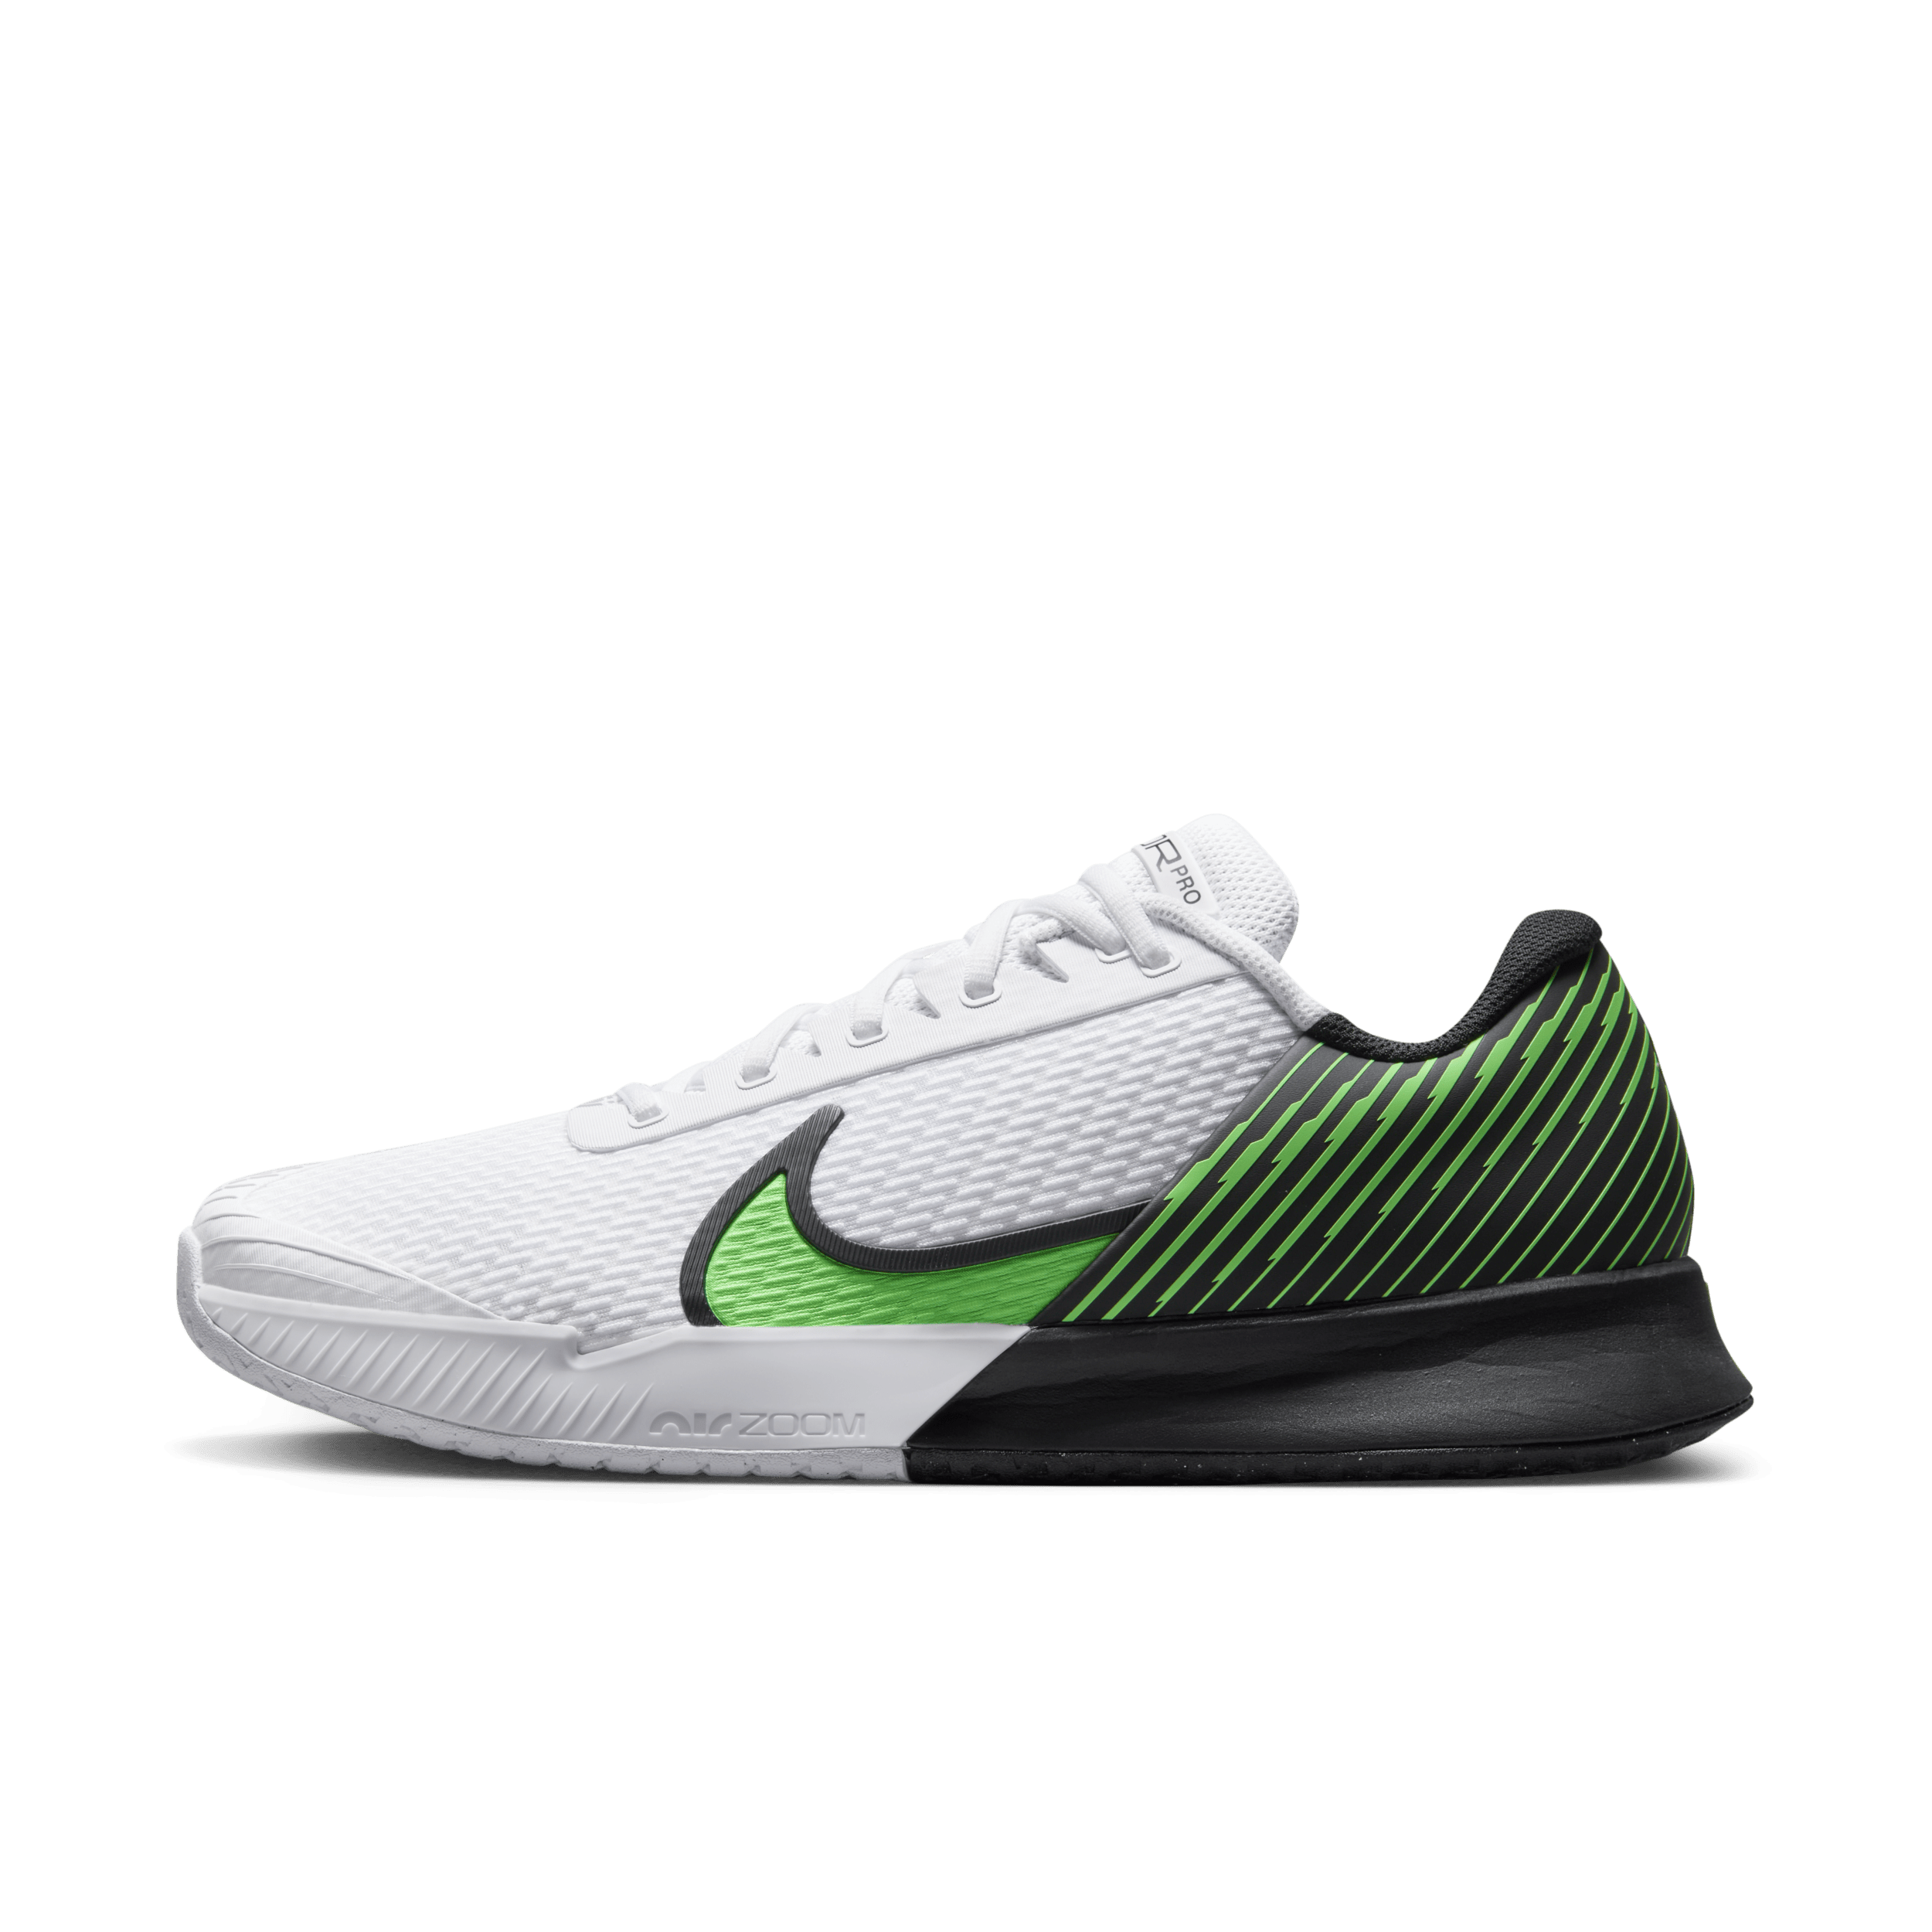 NikeCourt Air Zoom Vapor Pro 2 Hardcourt tennisschoenen voor heren - Wit